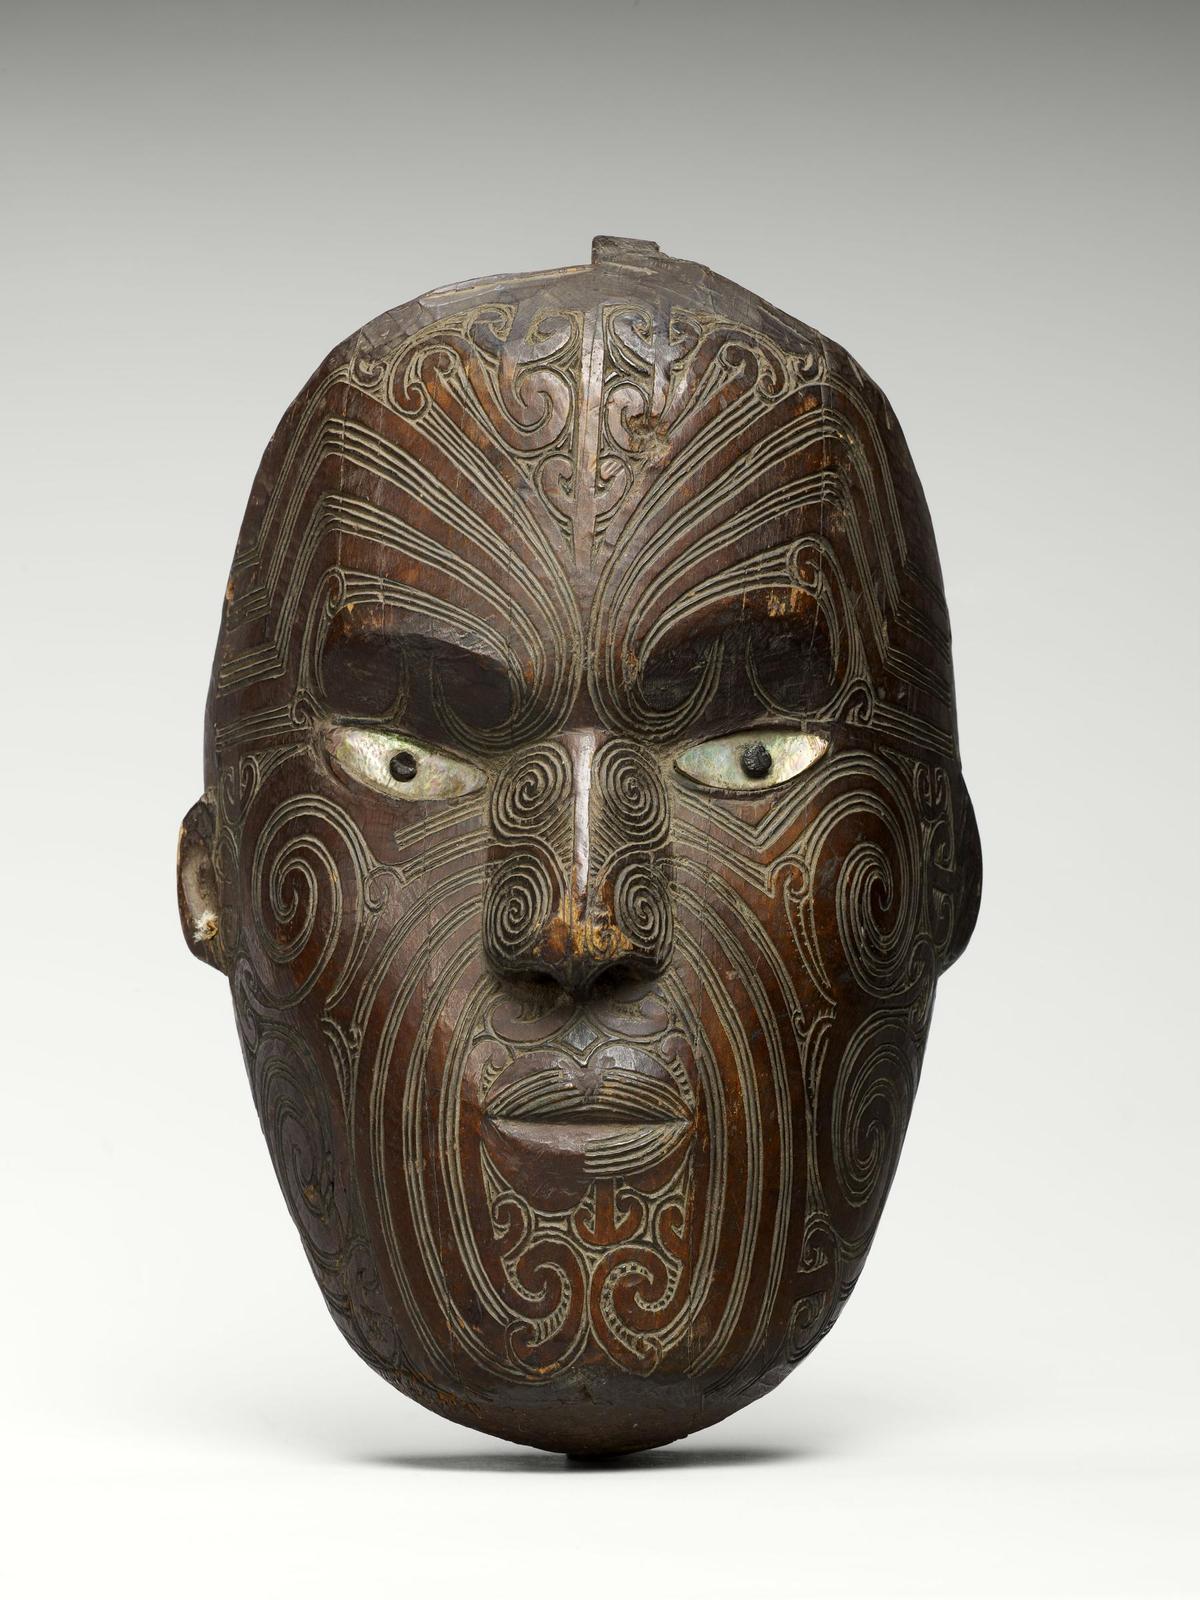 Giebelmaske der Maori aus dem 19. Jahrhundert.